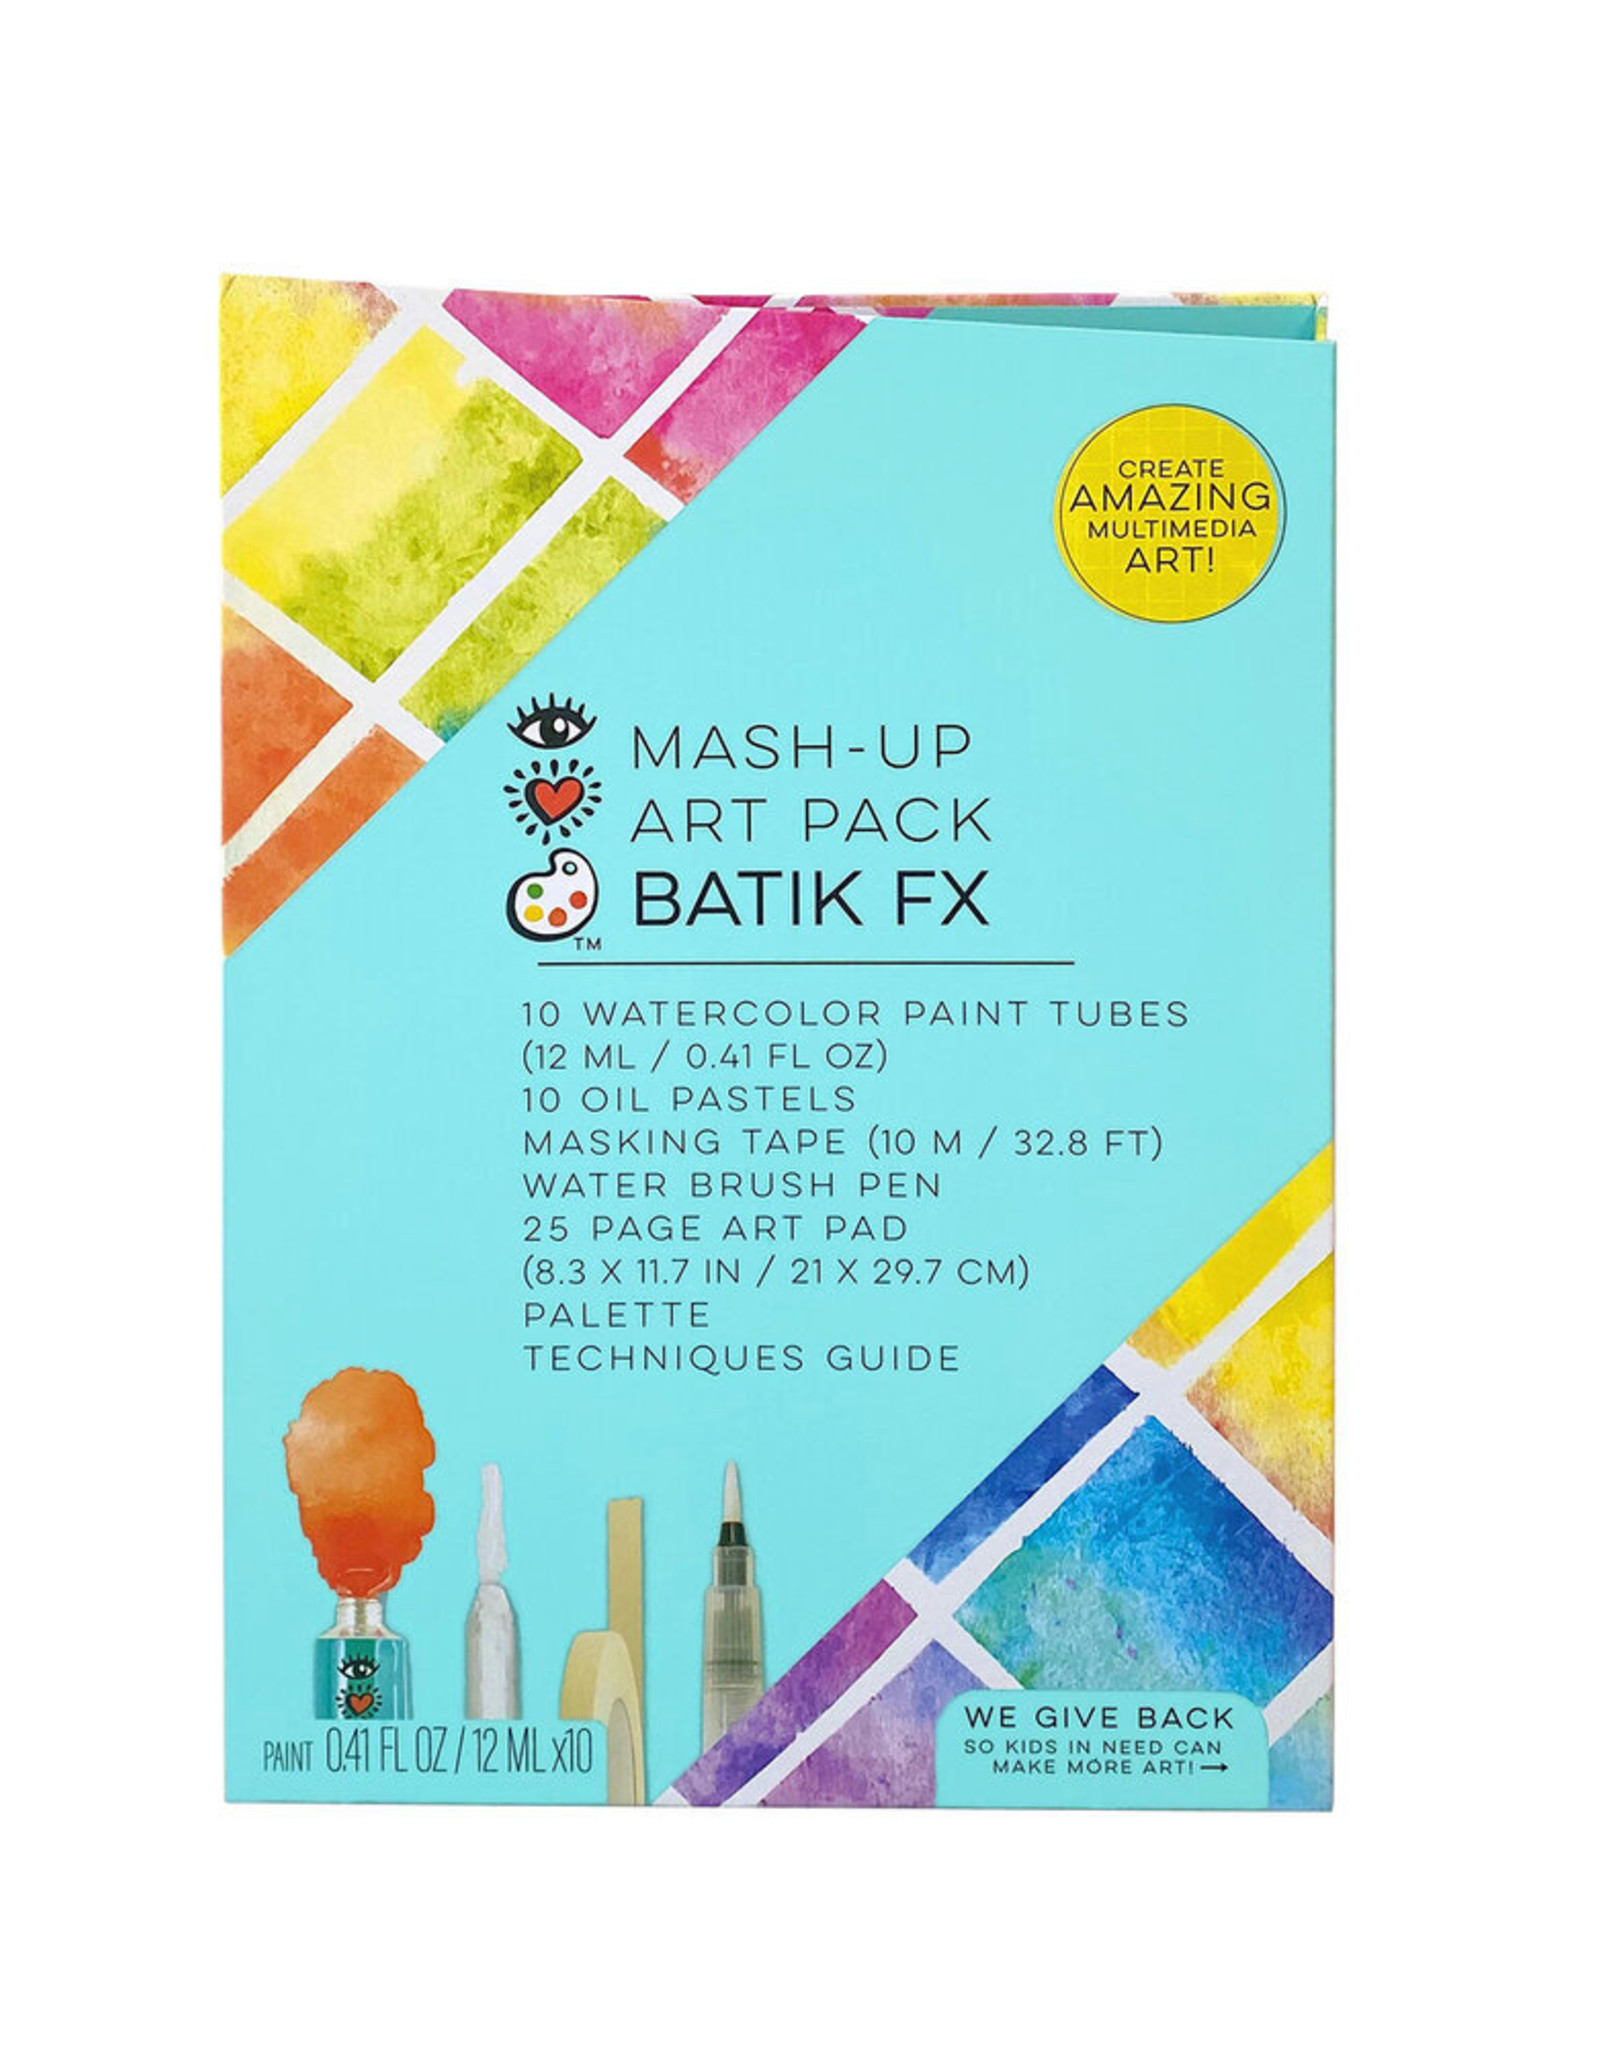 iHeartArt Mash-Up Art Pack Batik FX